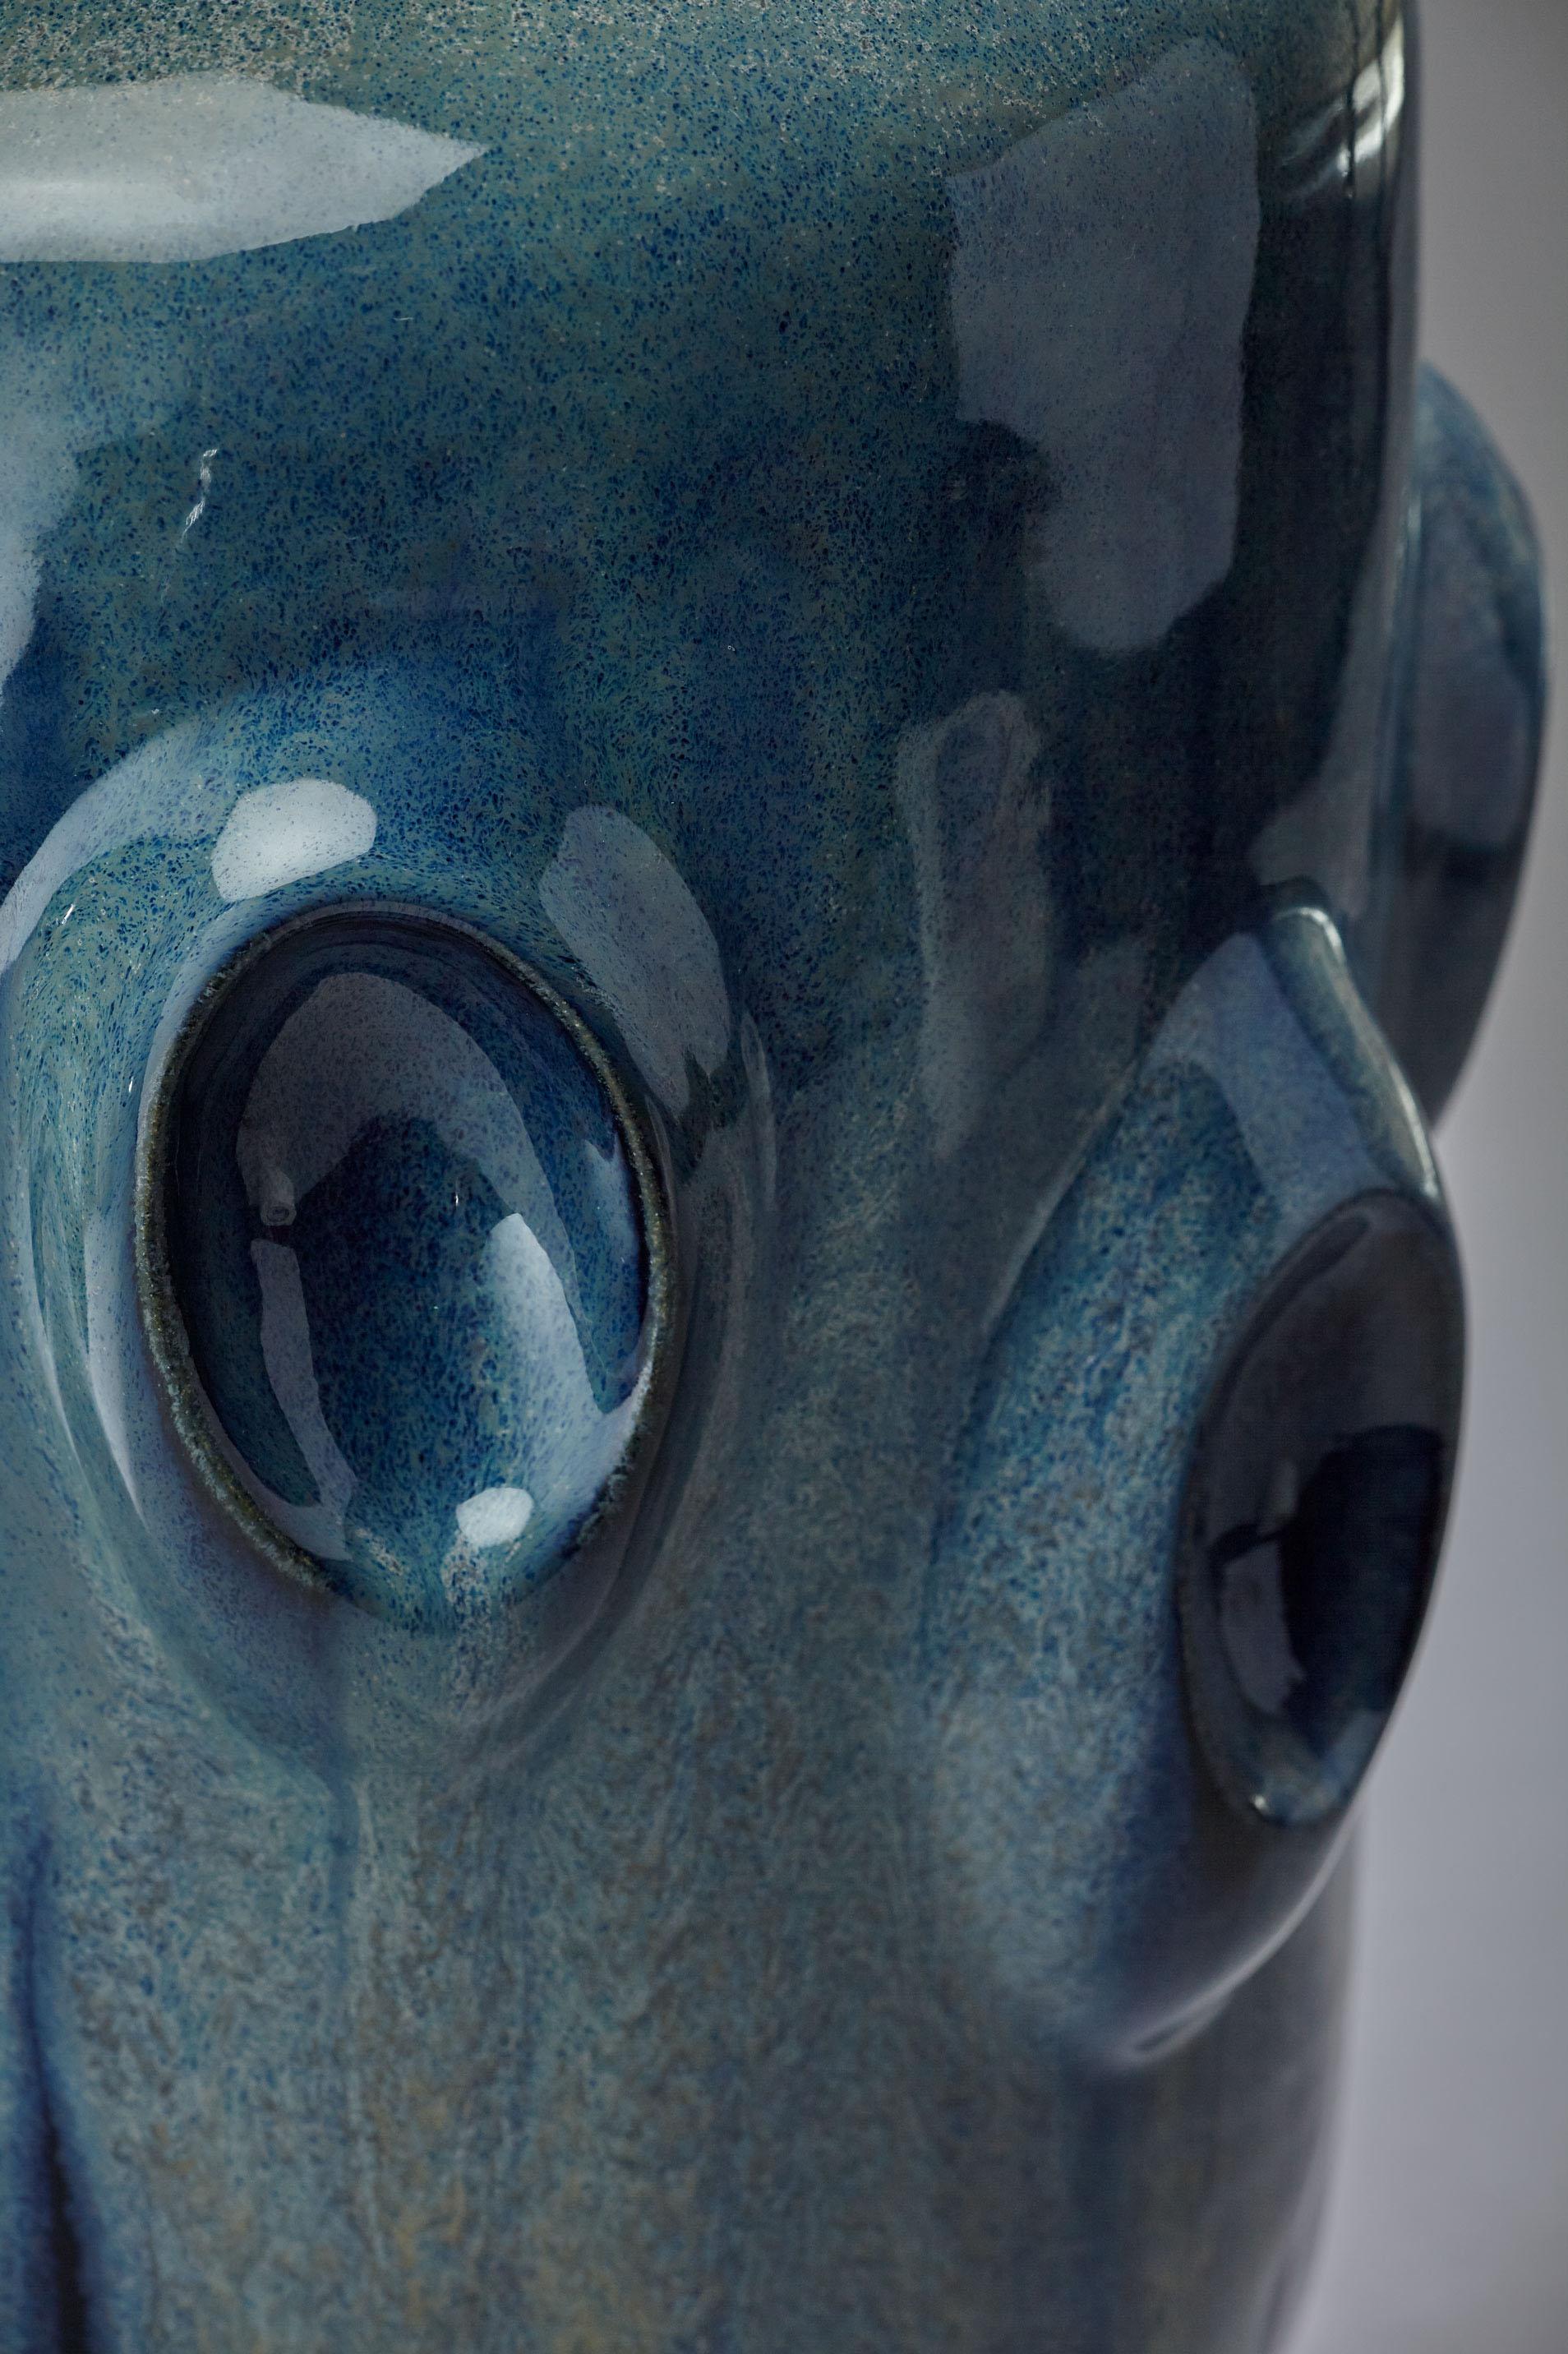 Buntblaue Grünspan-Zylindervase mit obloiden Formen handgefertigtes Einzelstück, 2017, glasiertes Steinzeug, Maße: ca. 18cm Breite x 36 cm Höhe

Violante Lodolo D'Oria (Genua, Italien, 1971) ist eine in London lebende italienische Künstlerin. Sie